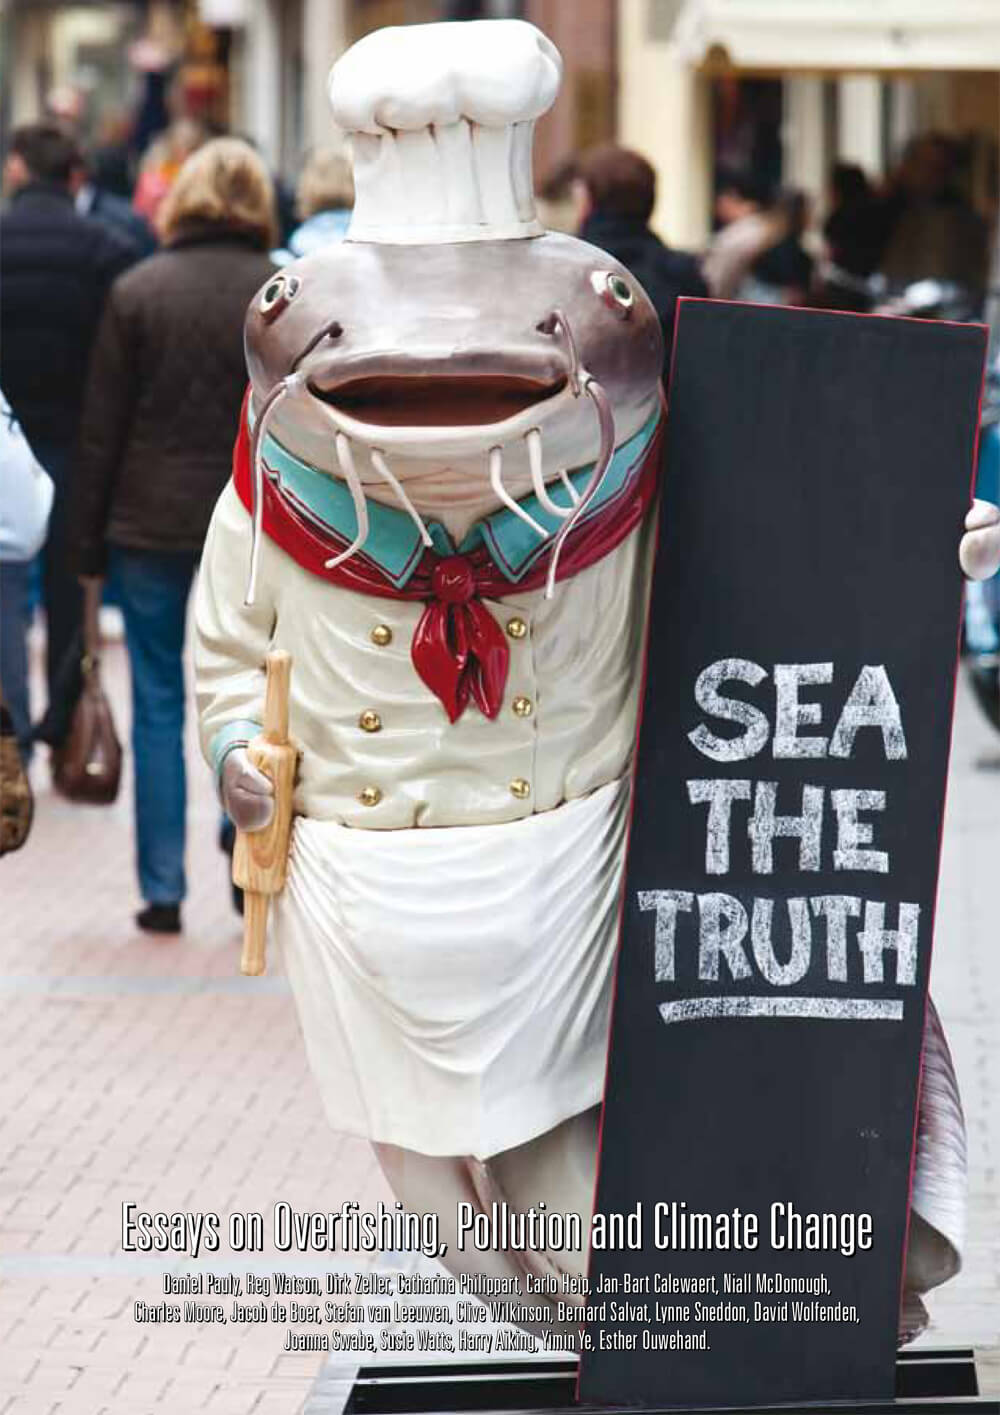 Sea the Truth